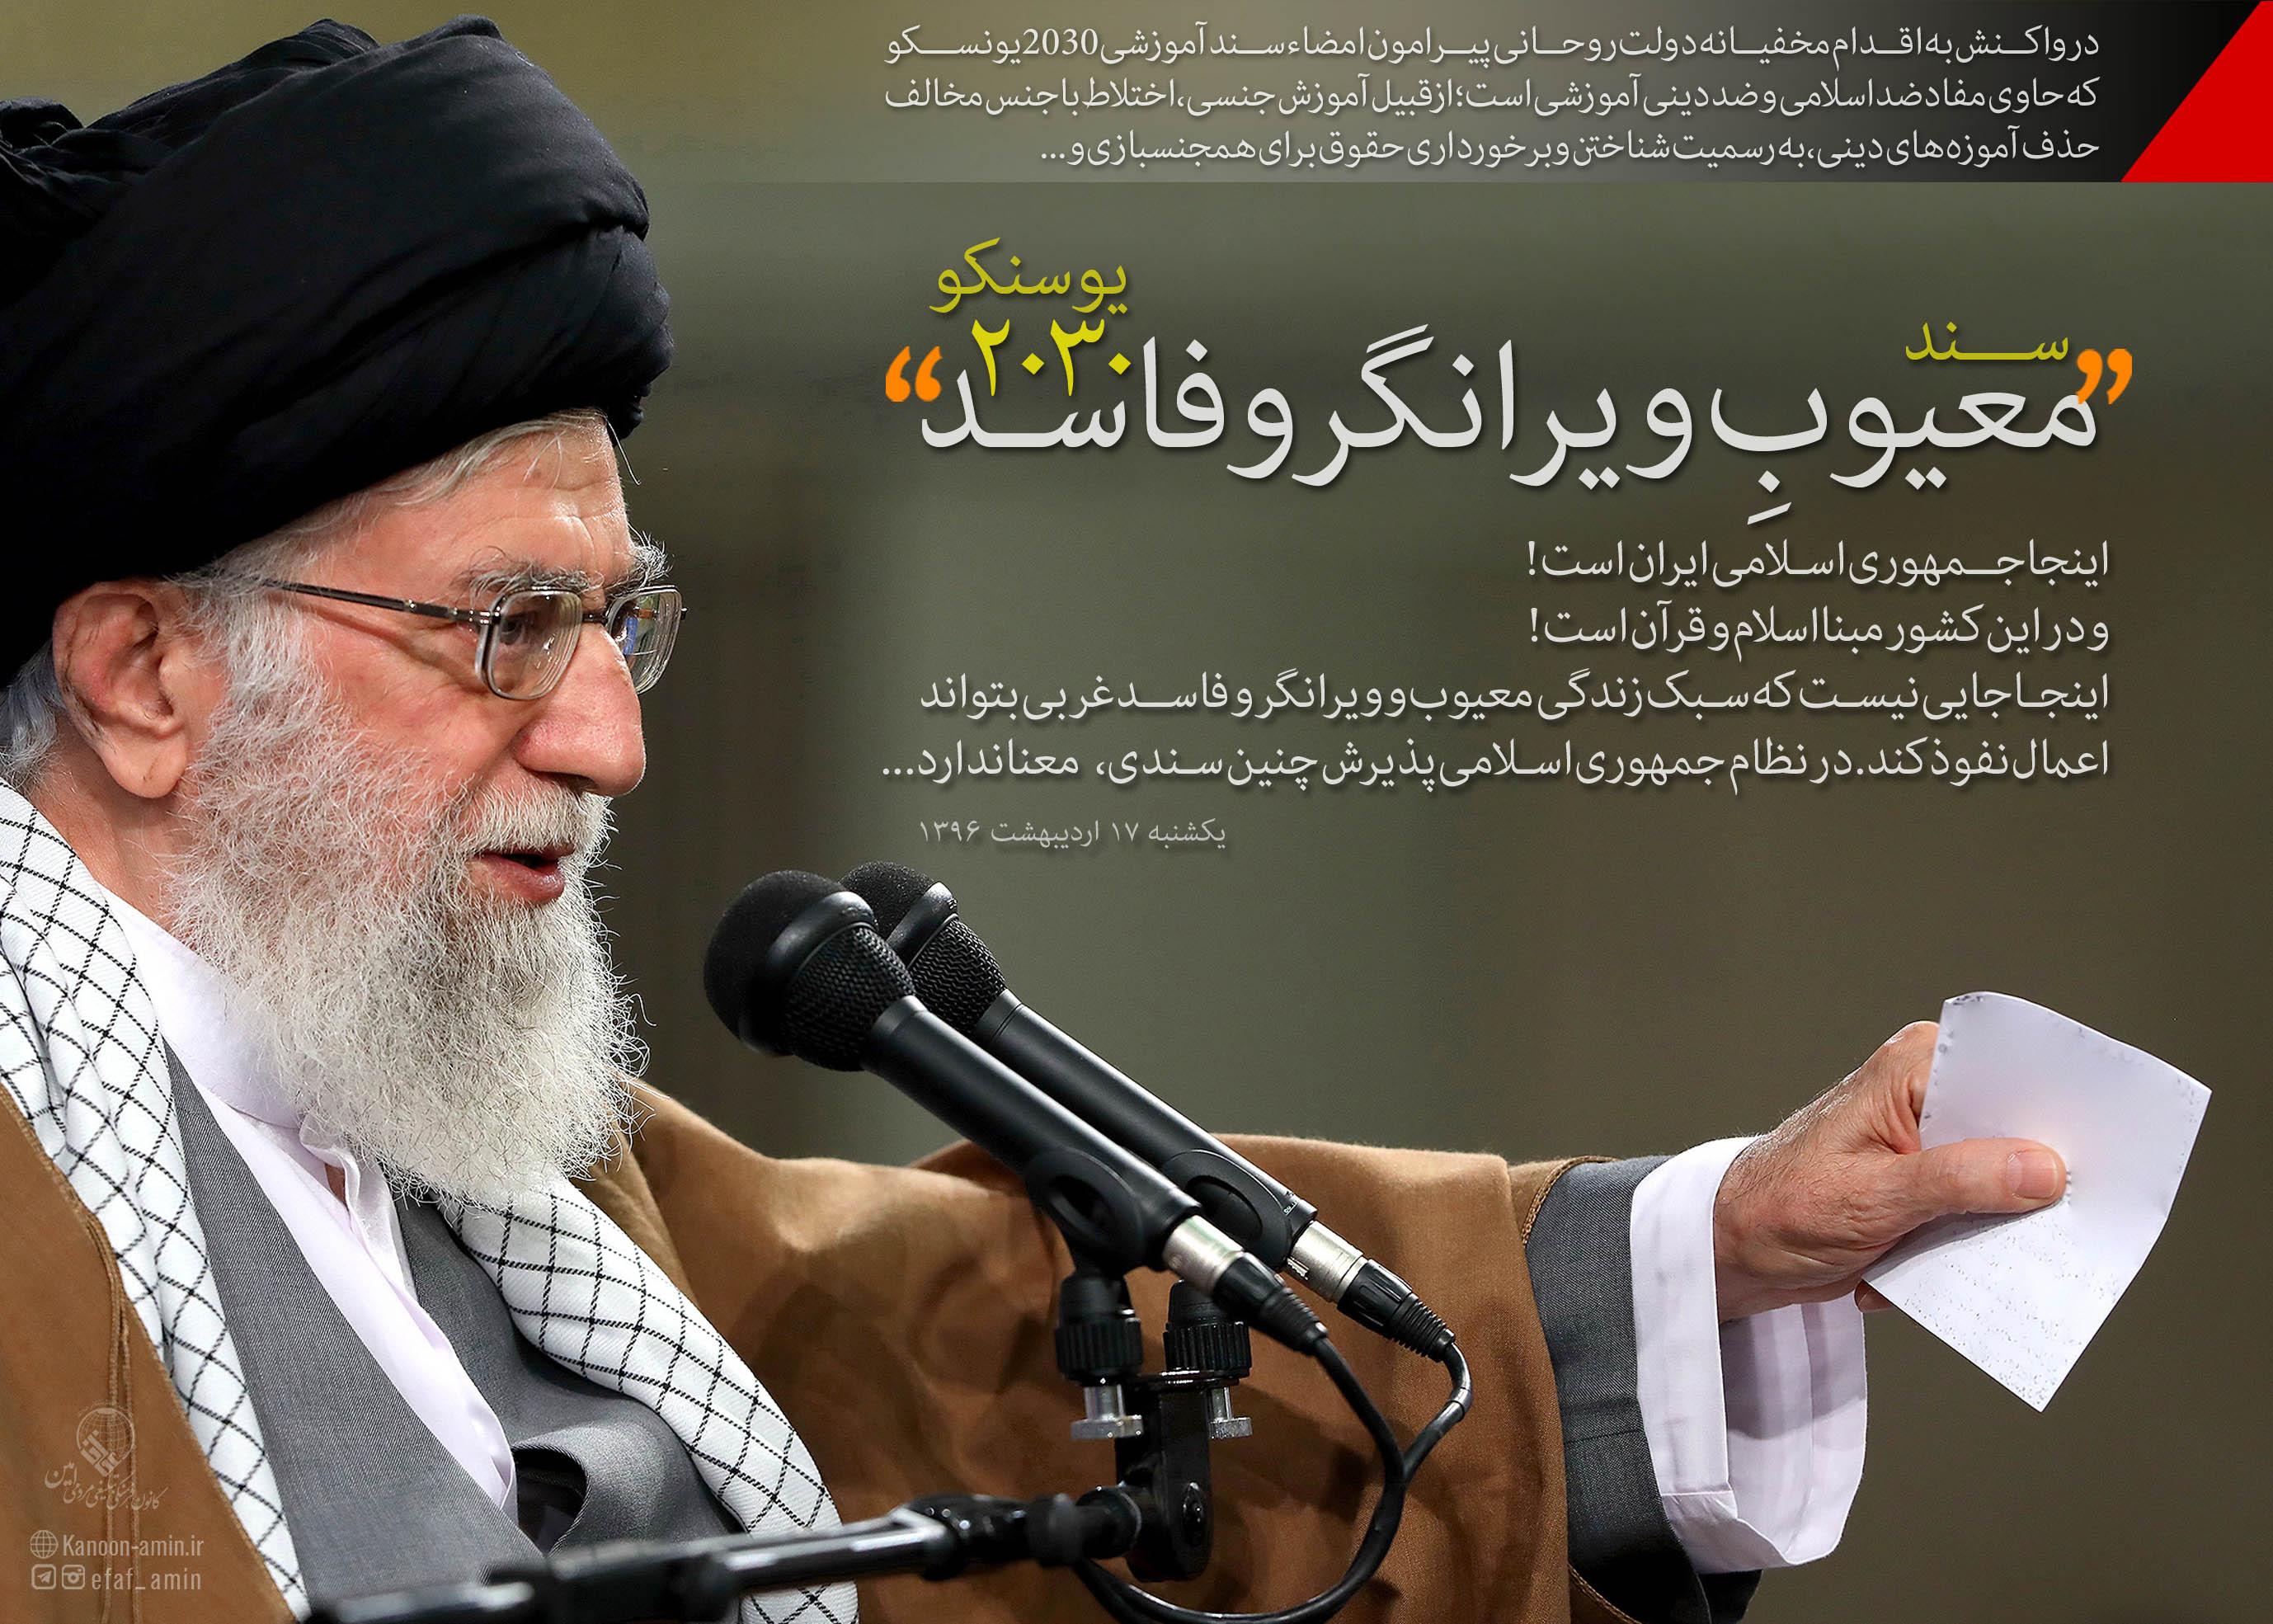 انتقاد شدید رهبر معظم انقلاب از امضاء مخفیانه #سند فاسد آموزشی ۲۰۳۰ یونسکو توسط دولت روحانی